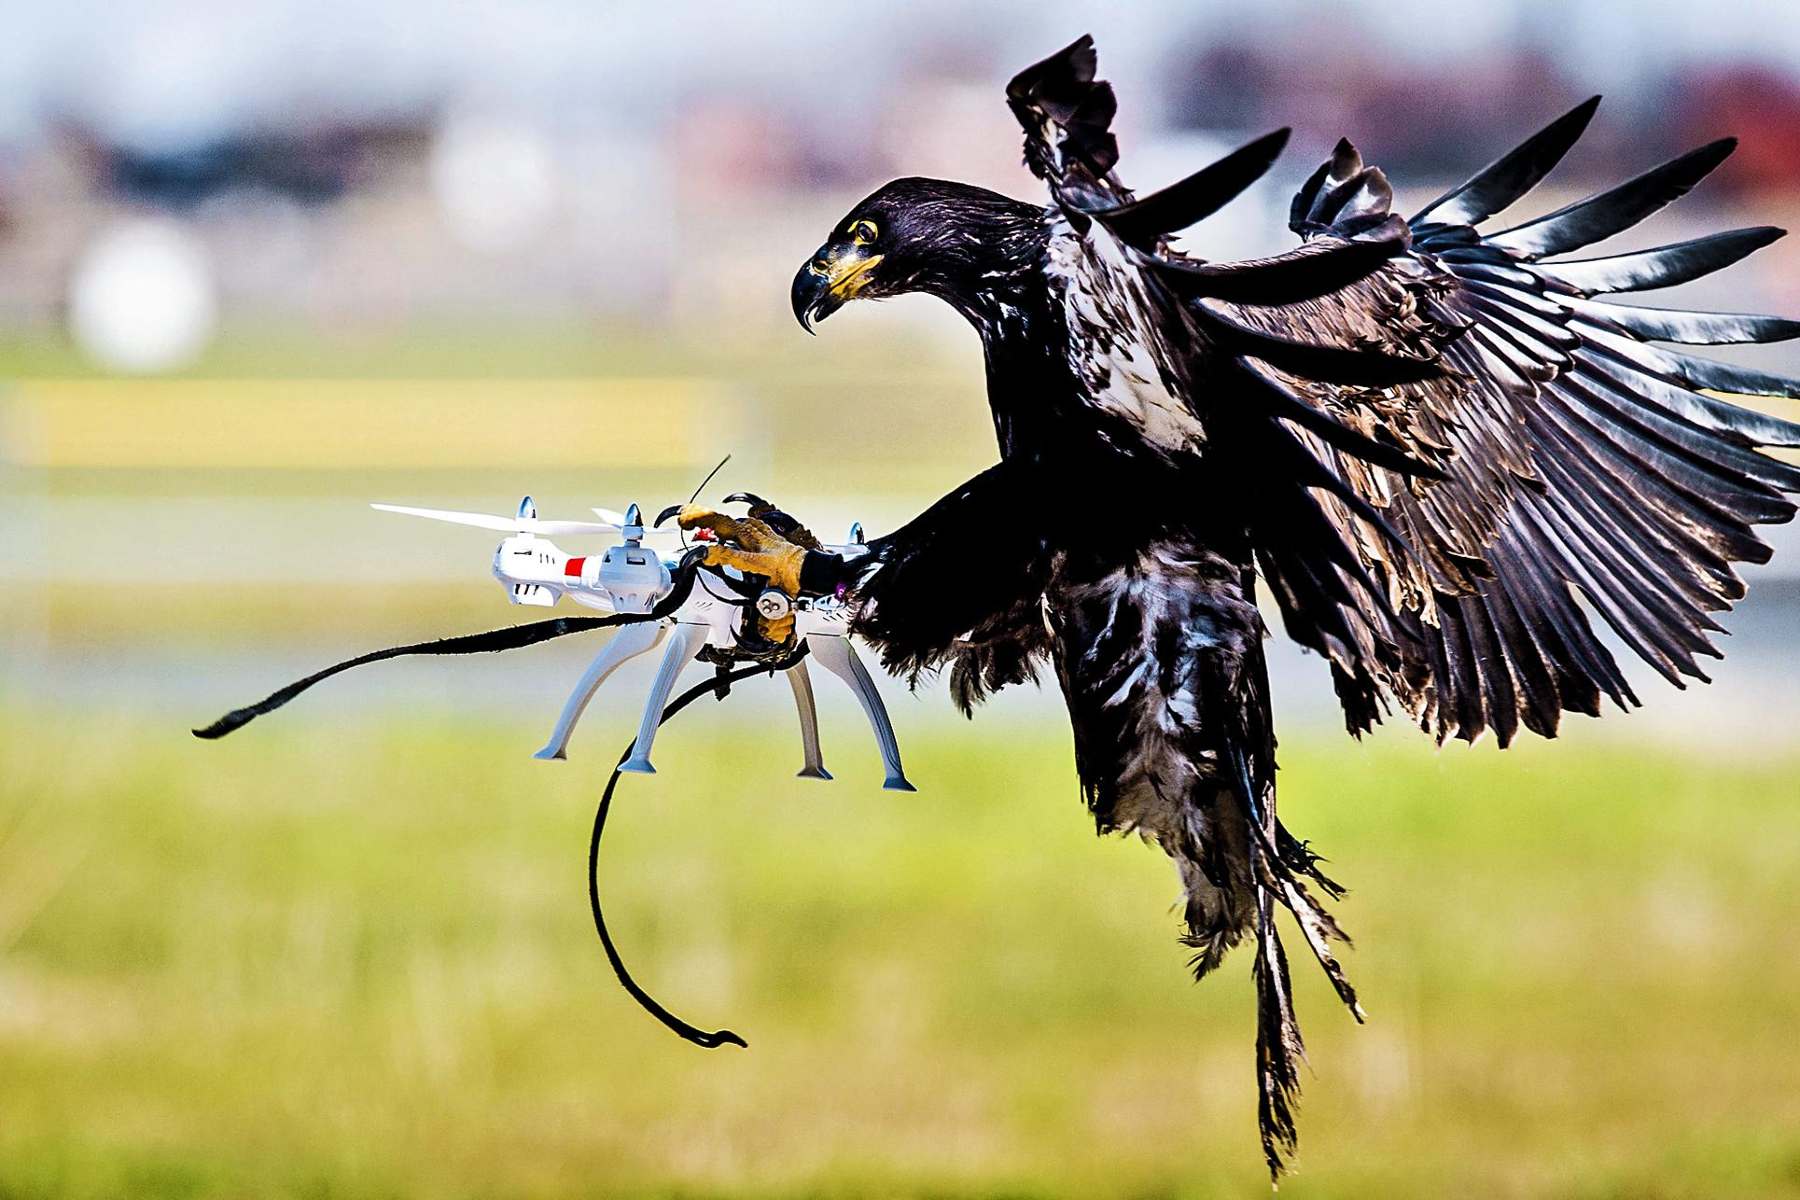 Bird drone interceptors